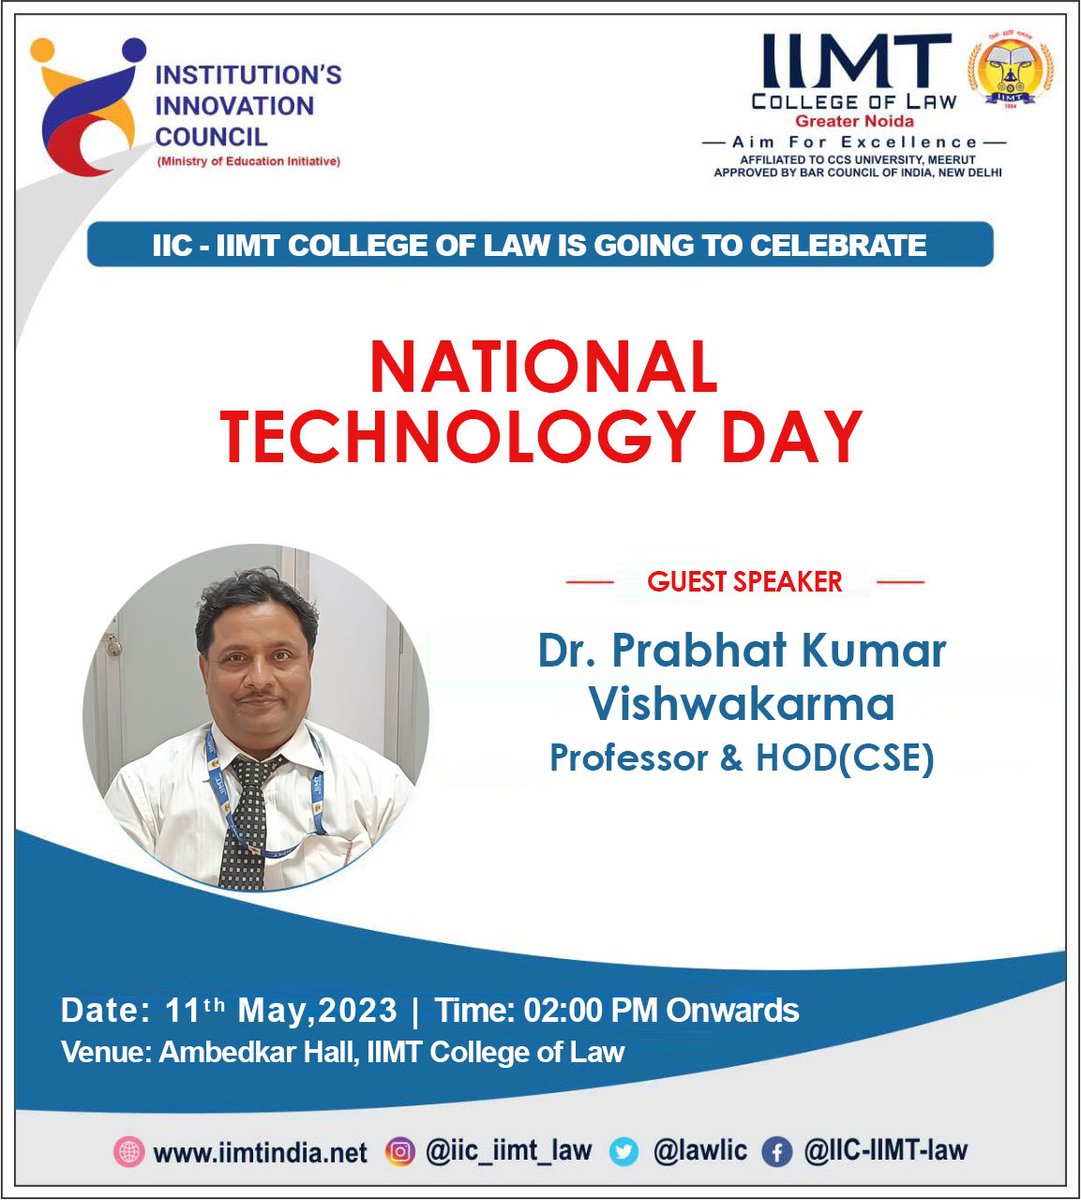 IIC-IIMT College of Law is Celebrating ' National Technology Day ' on 11th May 2023.
#IIMTIndia #IIC #Entrepreneur #Edcell #InnovationCell #InstitutionInnovationCouncil
#entrepreneurship #entrepreneur #Innovation #IIMT